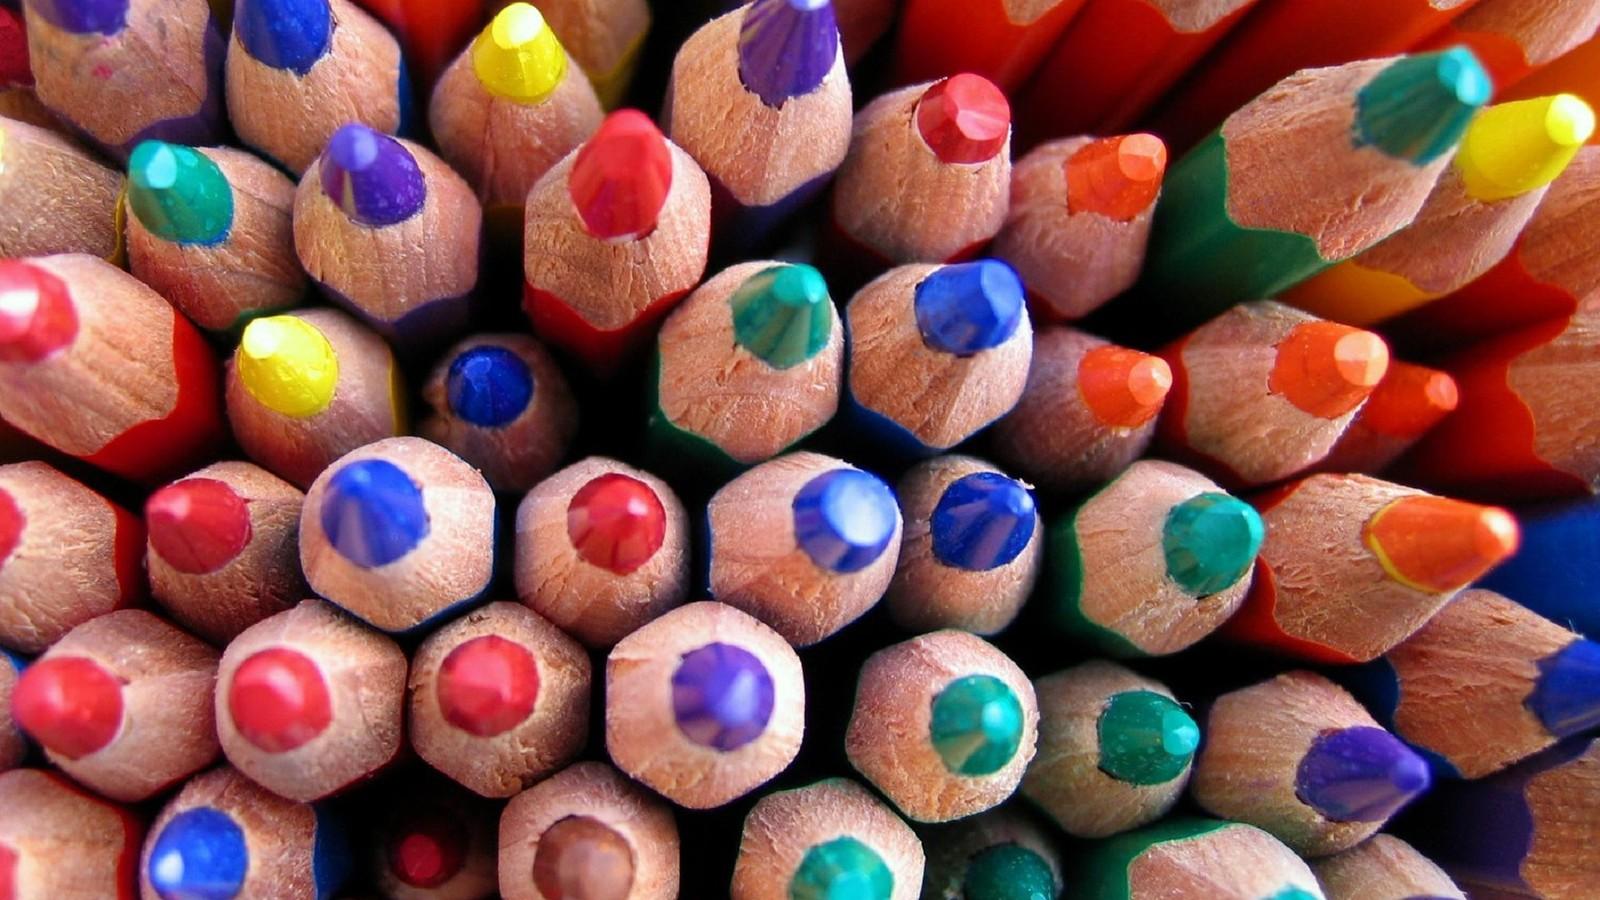 www.campfa.ir بهترین والپیپر ها با موضوع مداد رنگی با کیفیت بالا